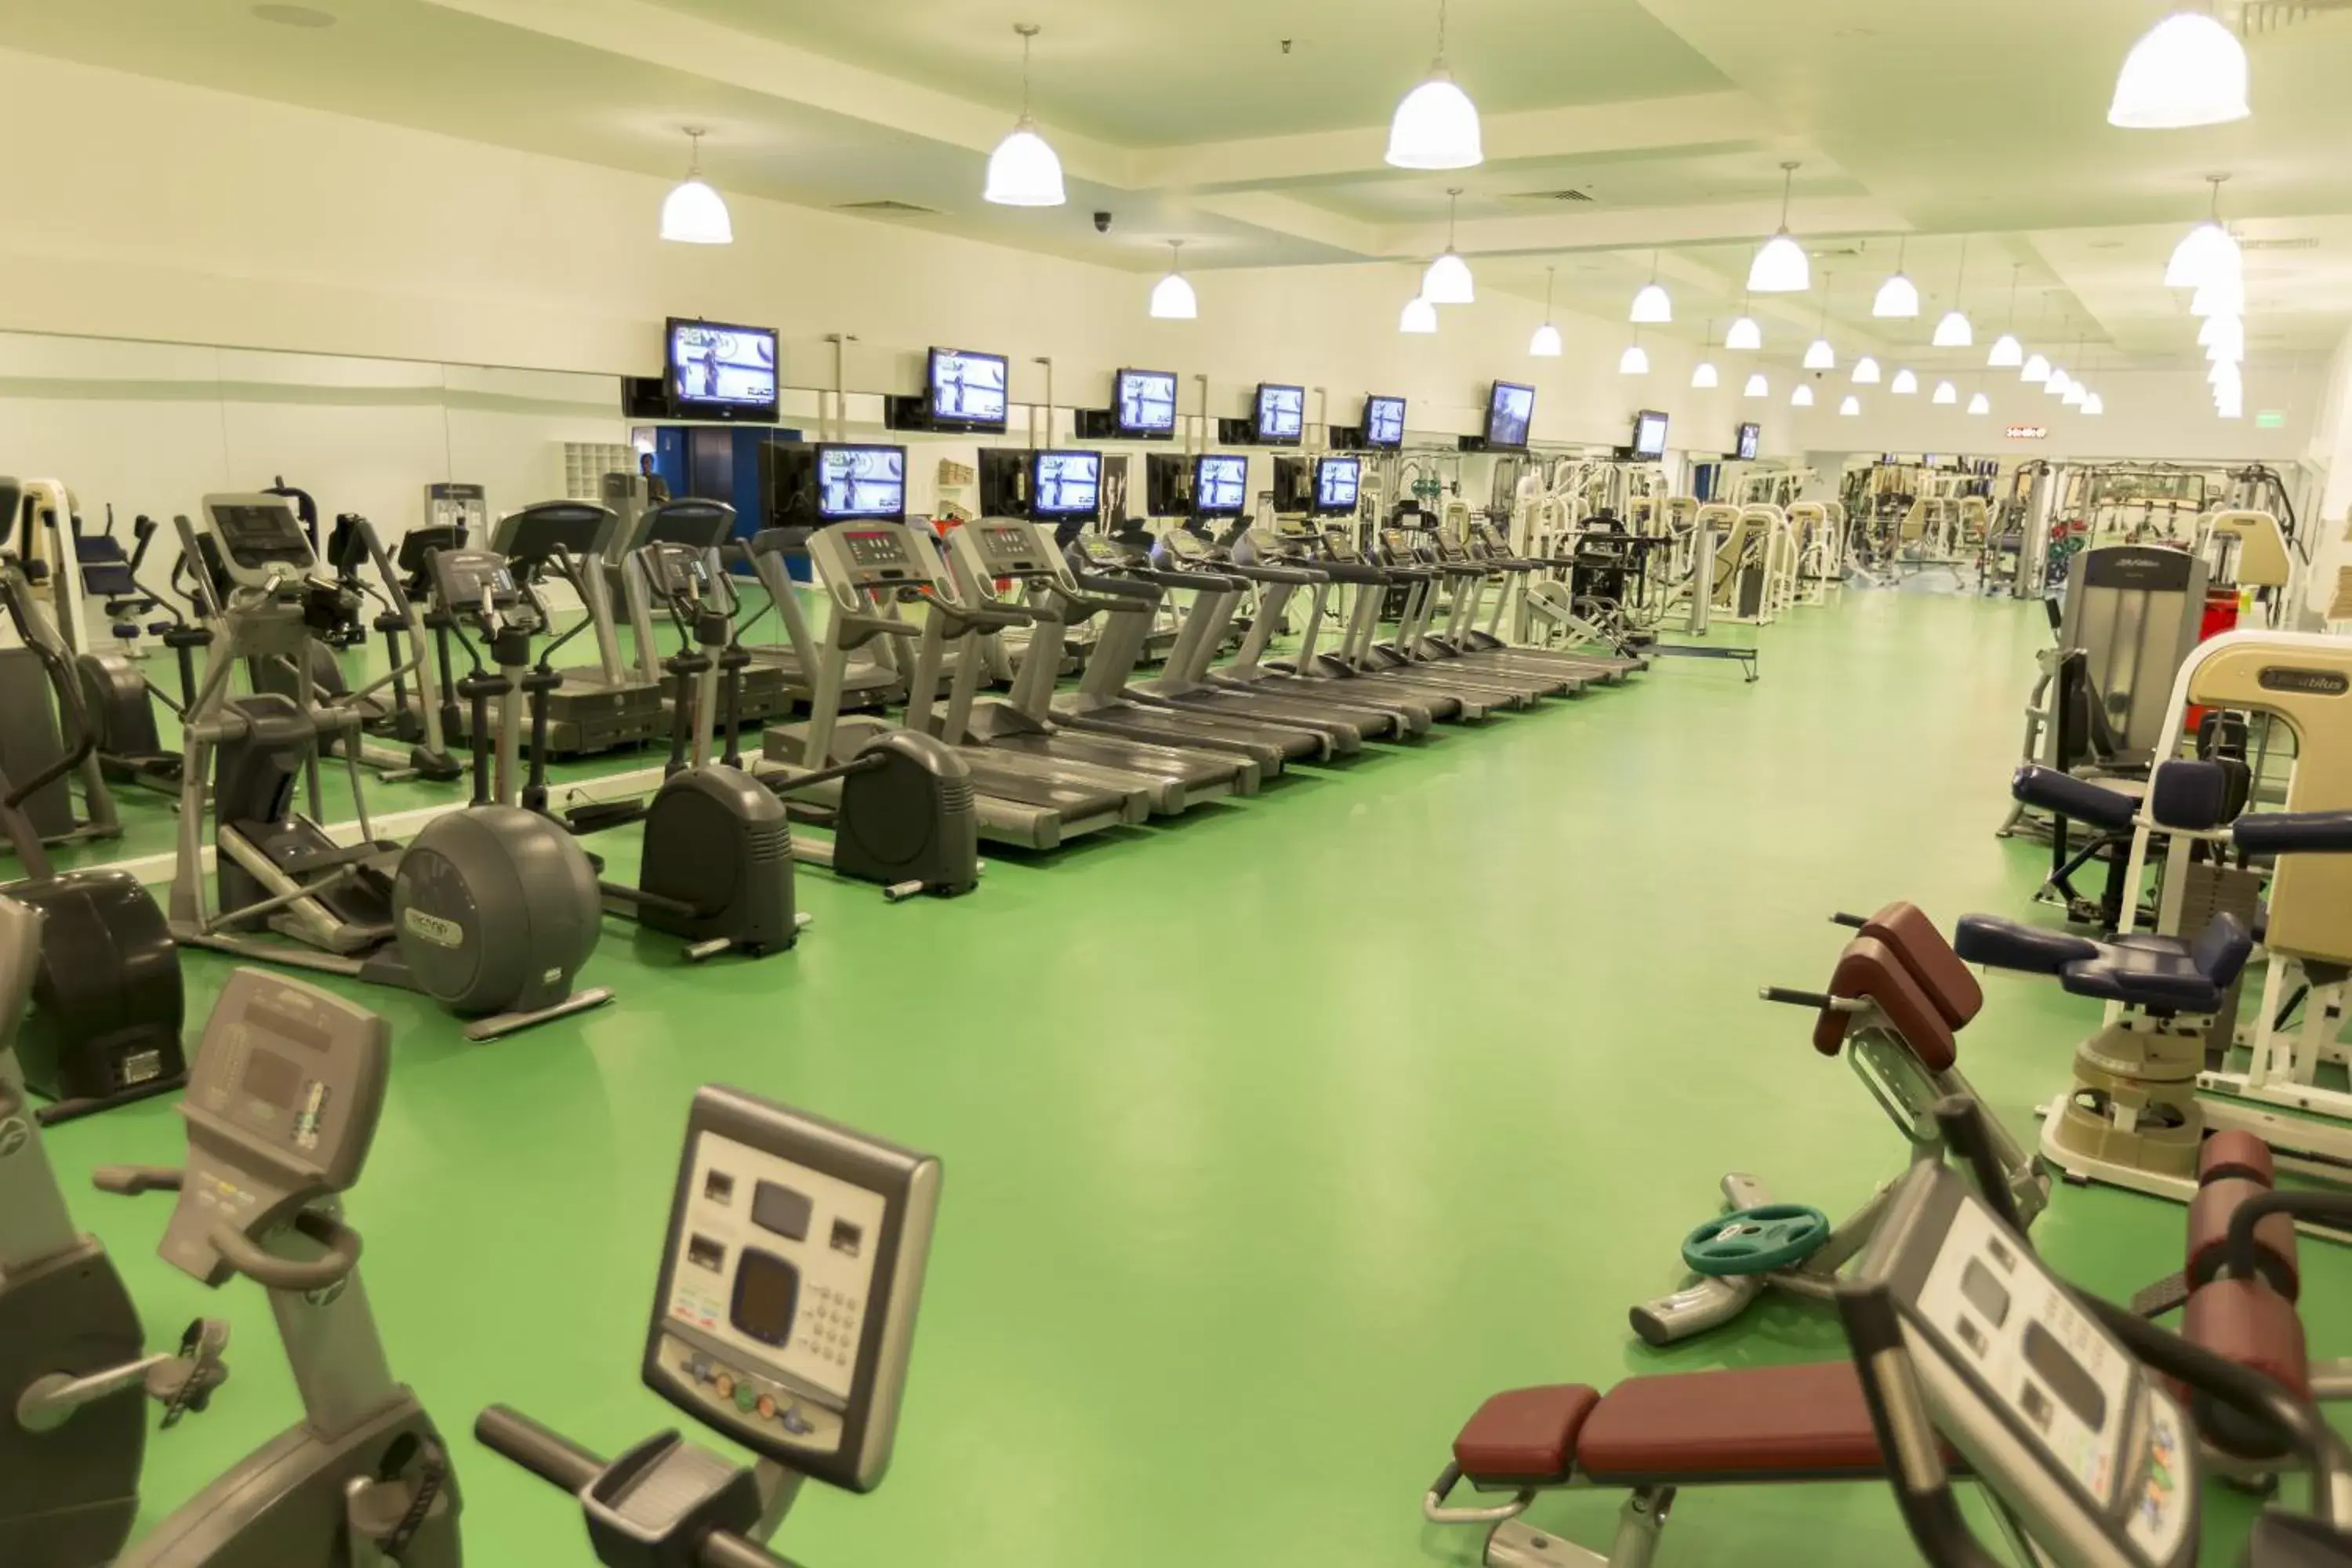 Fitness centre/facilities, Fitness Center/Facilities in The Marmara Antalya